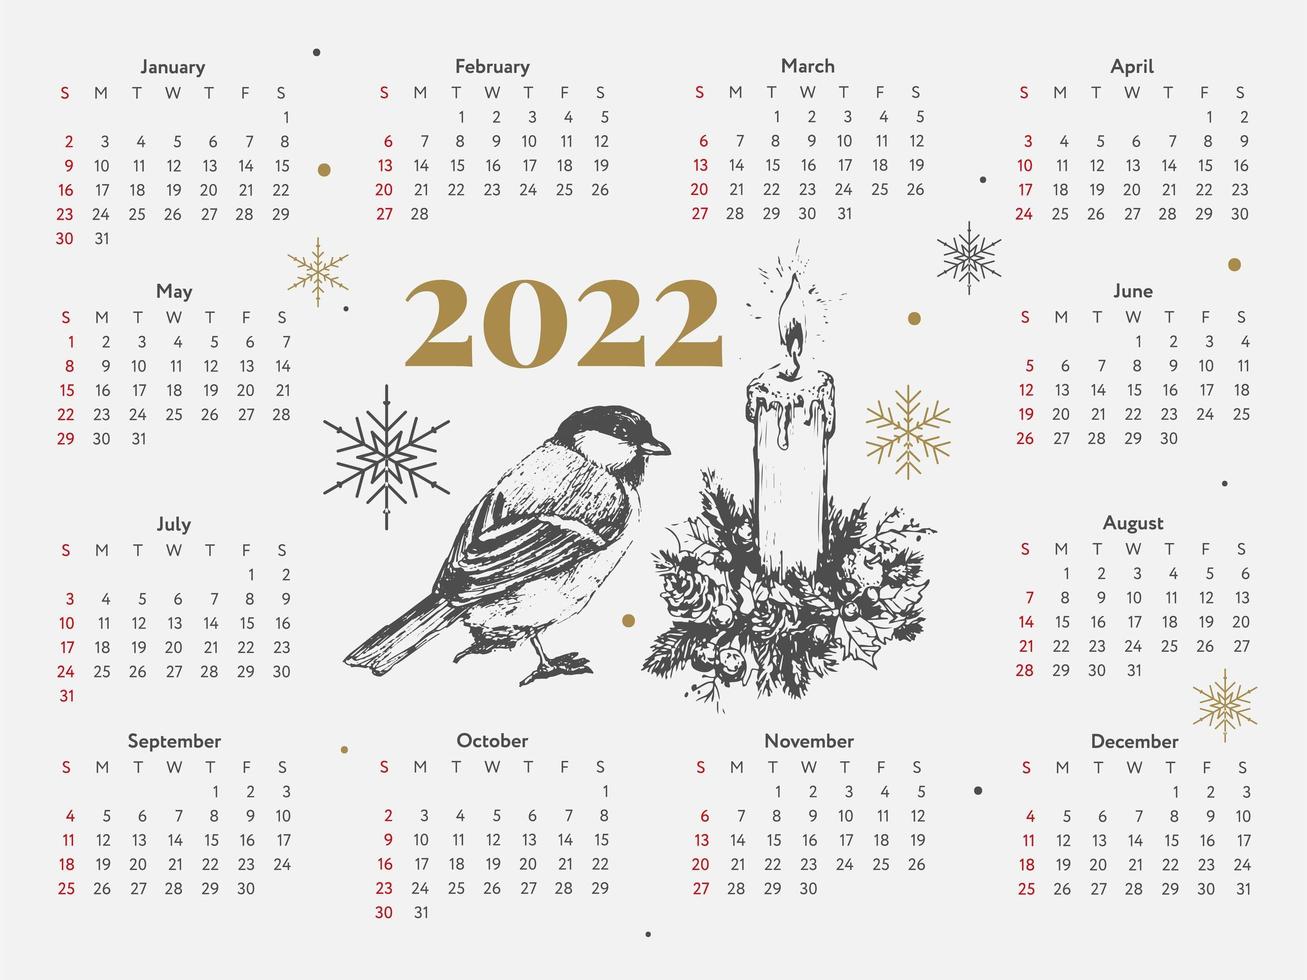 2022 árbol de navidad año nuevo bosquejo calendario semana comienza el domingo. vector